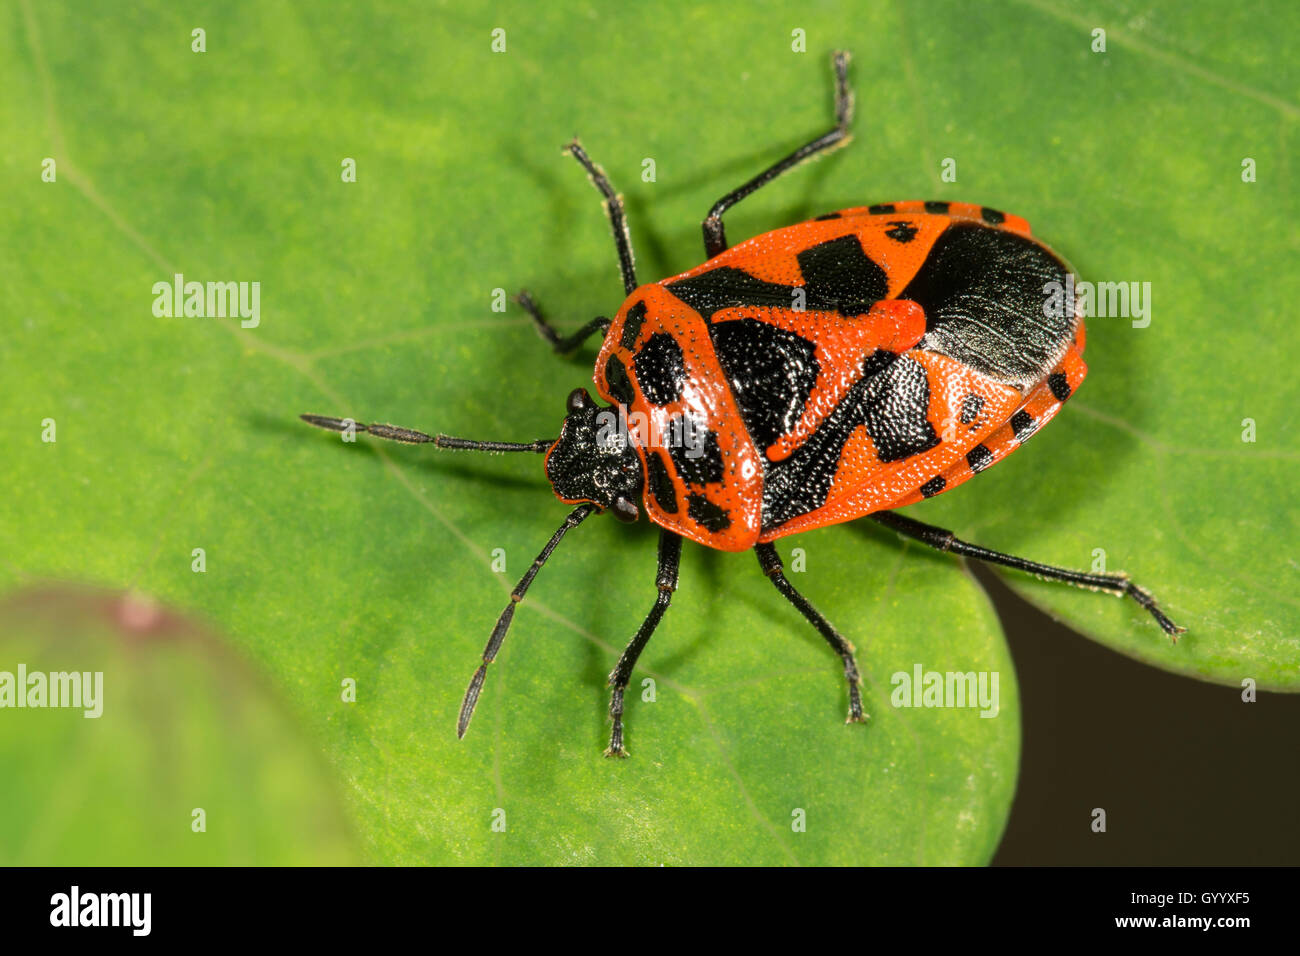 Rosso e nero bug di protezione (Eurydema dominulus) sulla foglia, Baden-Württemberg, Germania Foto Stock